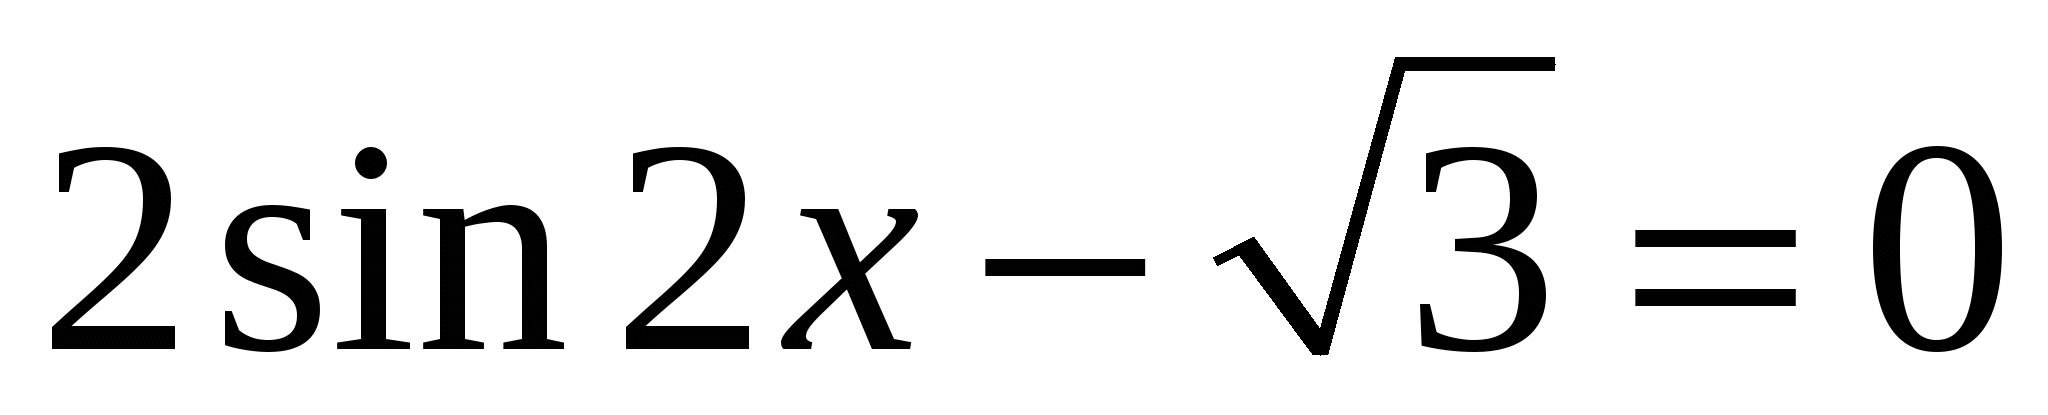 Самостоятельная работа по теме: Решение тригонометрических уравнений (10 класс)